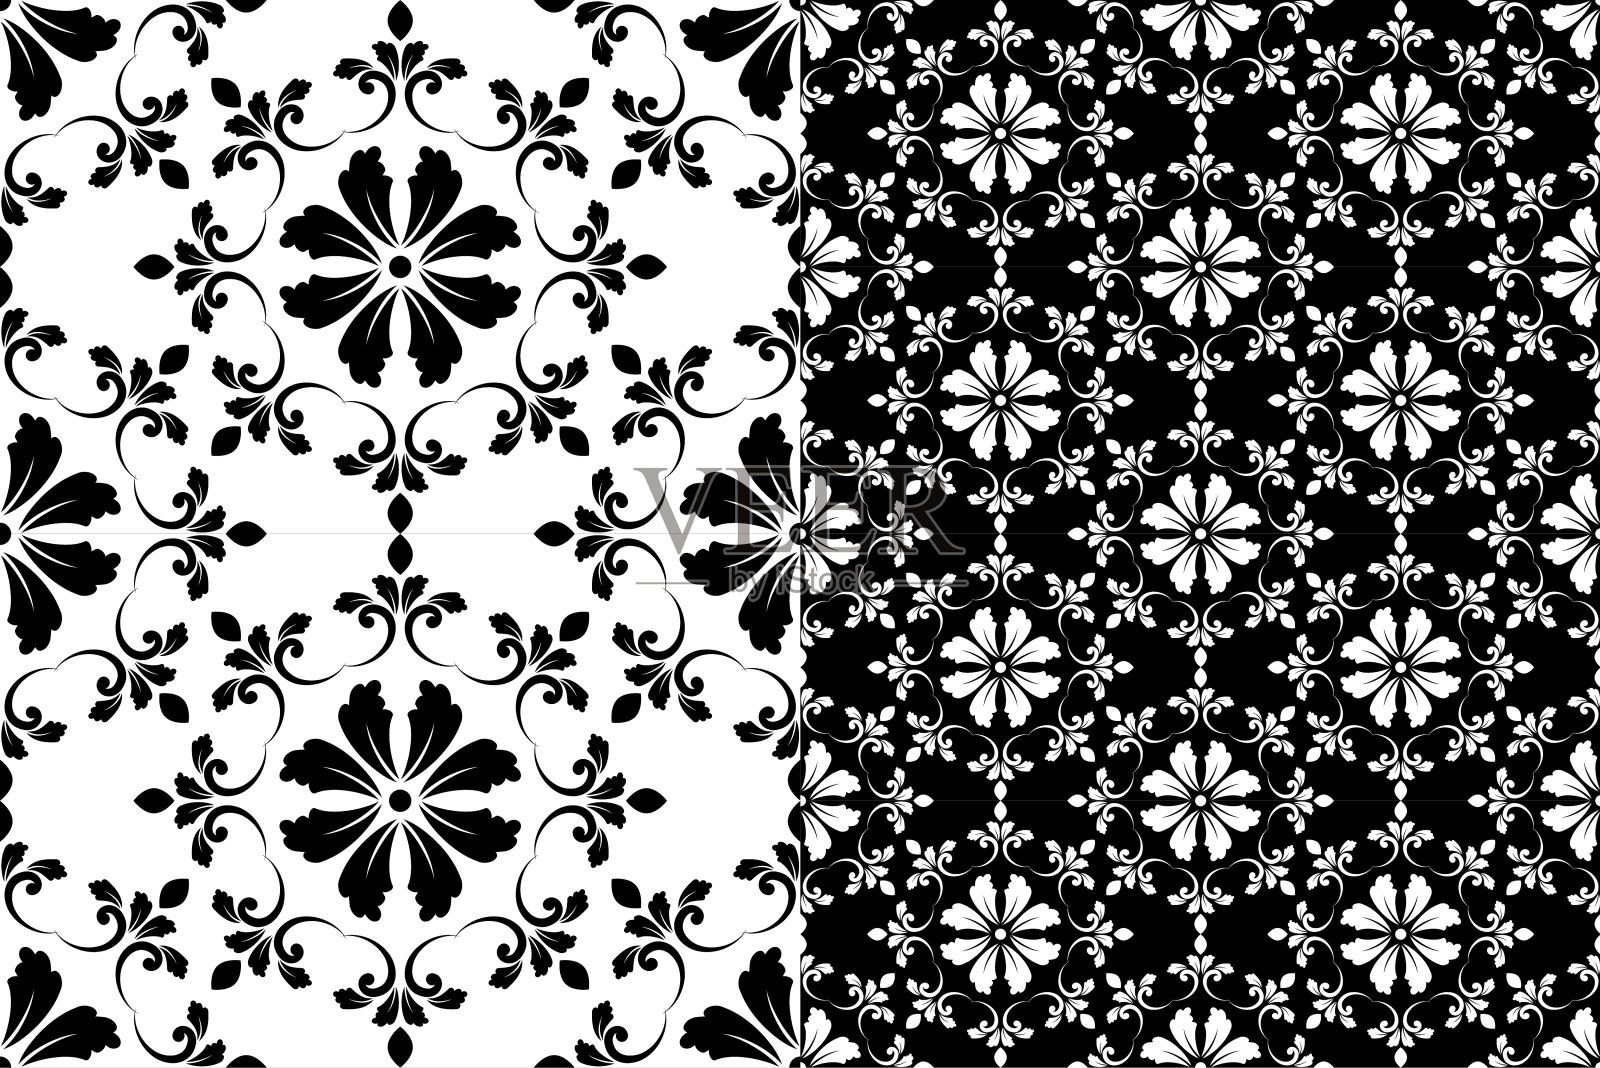 黑白相间的花卉图案插画图片素材